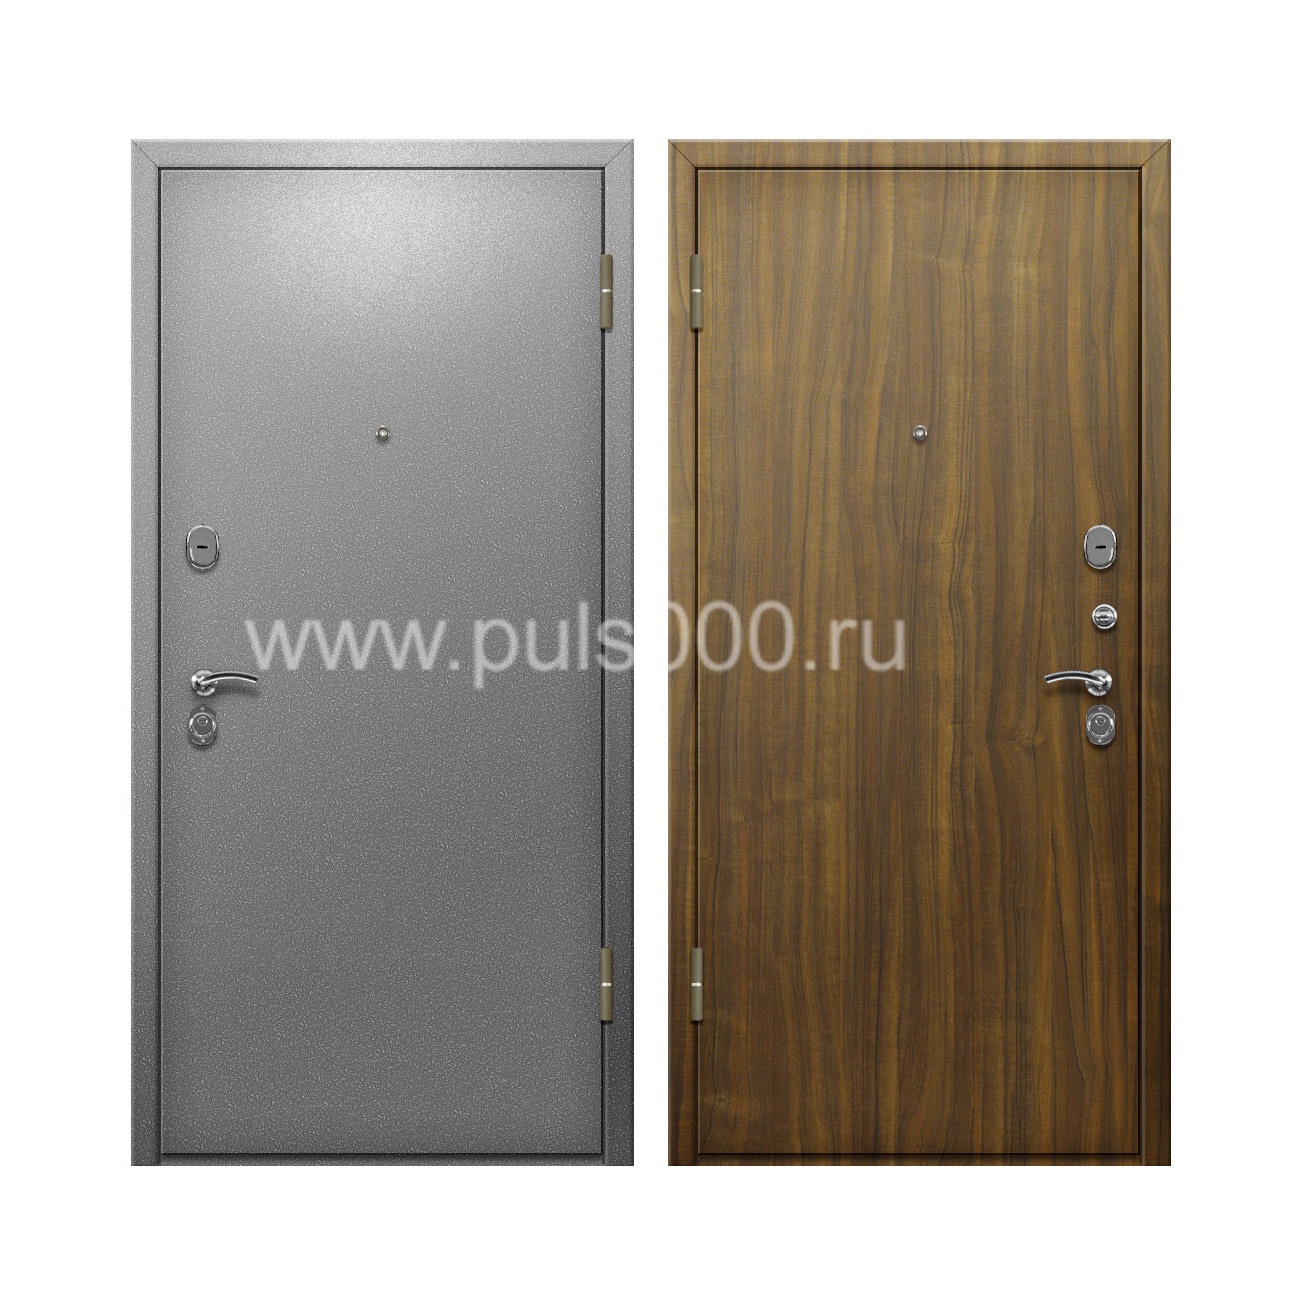 Входная дверь с серым порошковым напылением  и ламинатом PR-80, цена 20 000  руб.